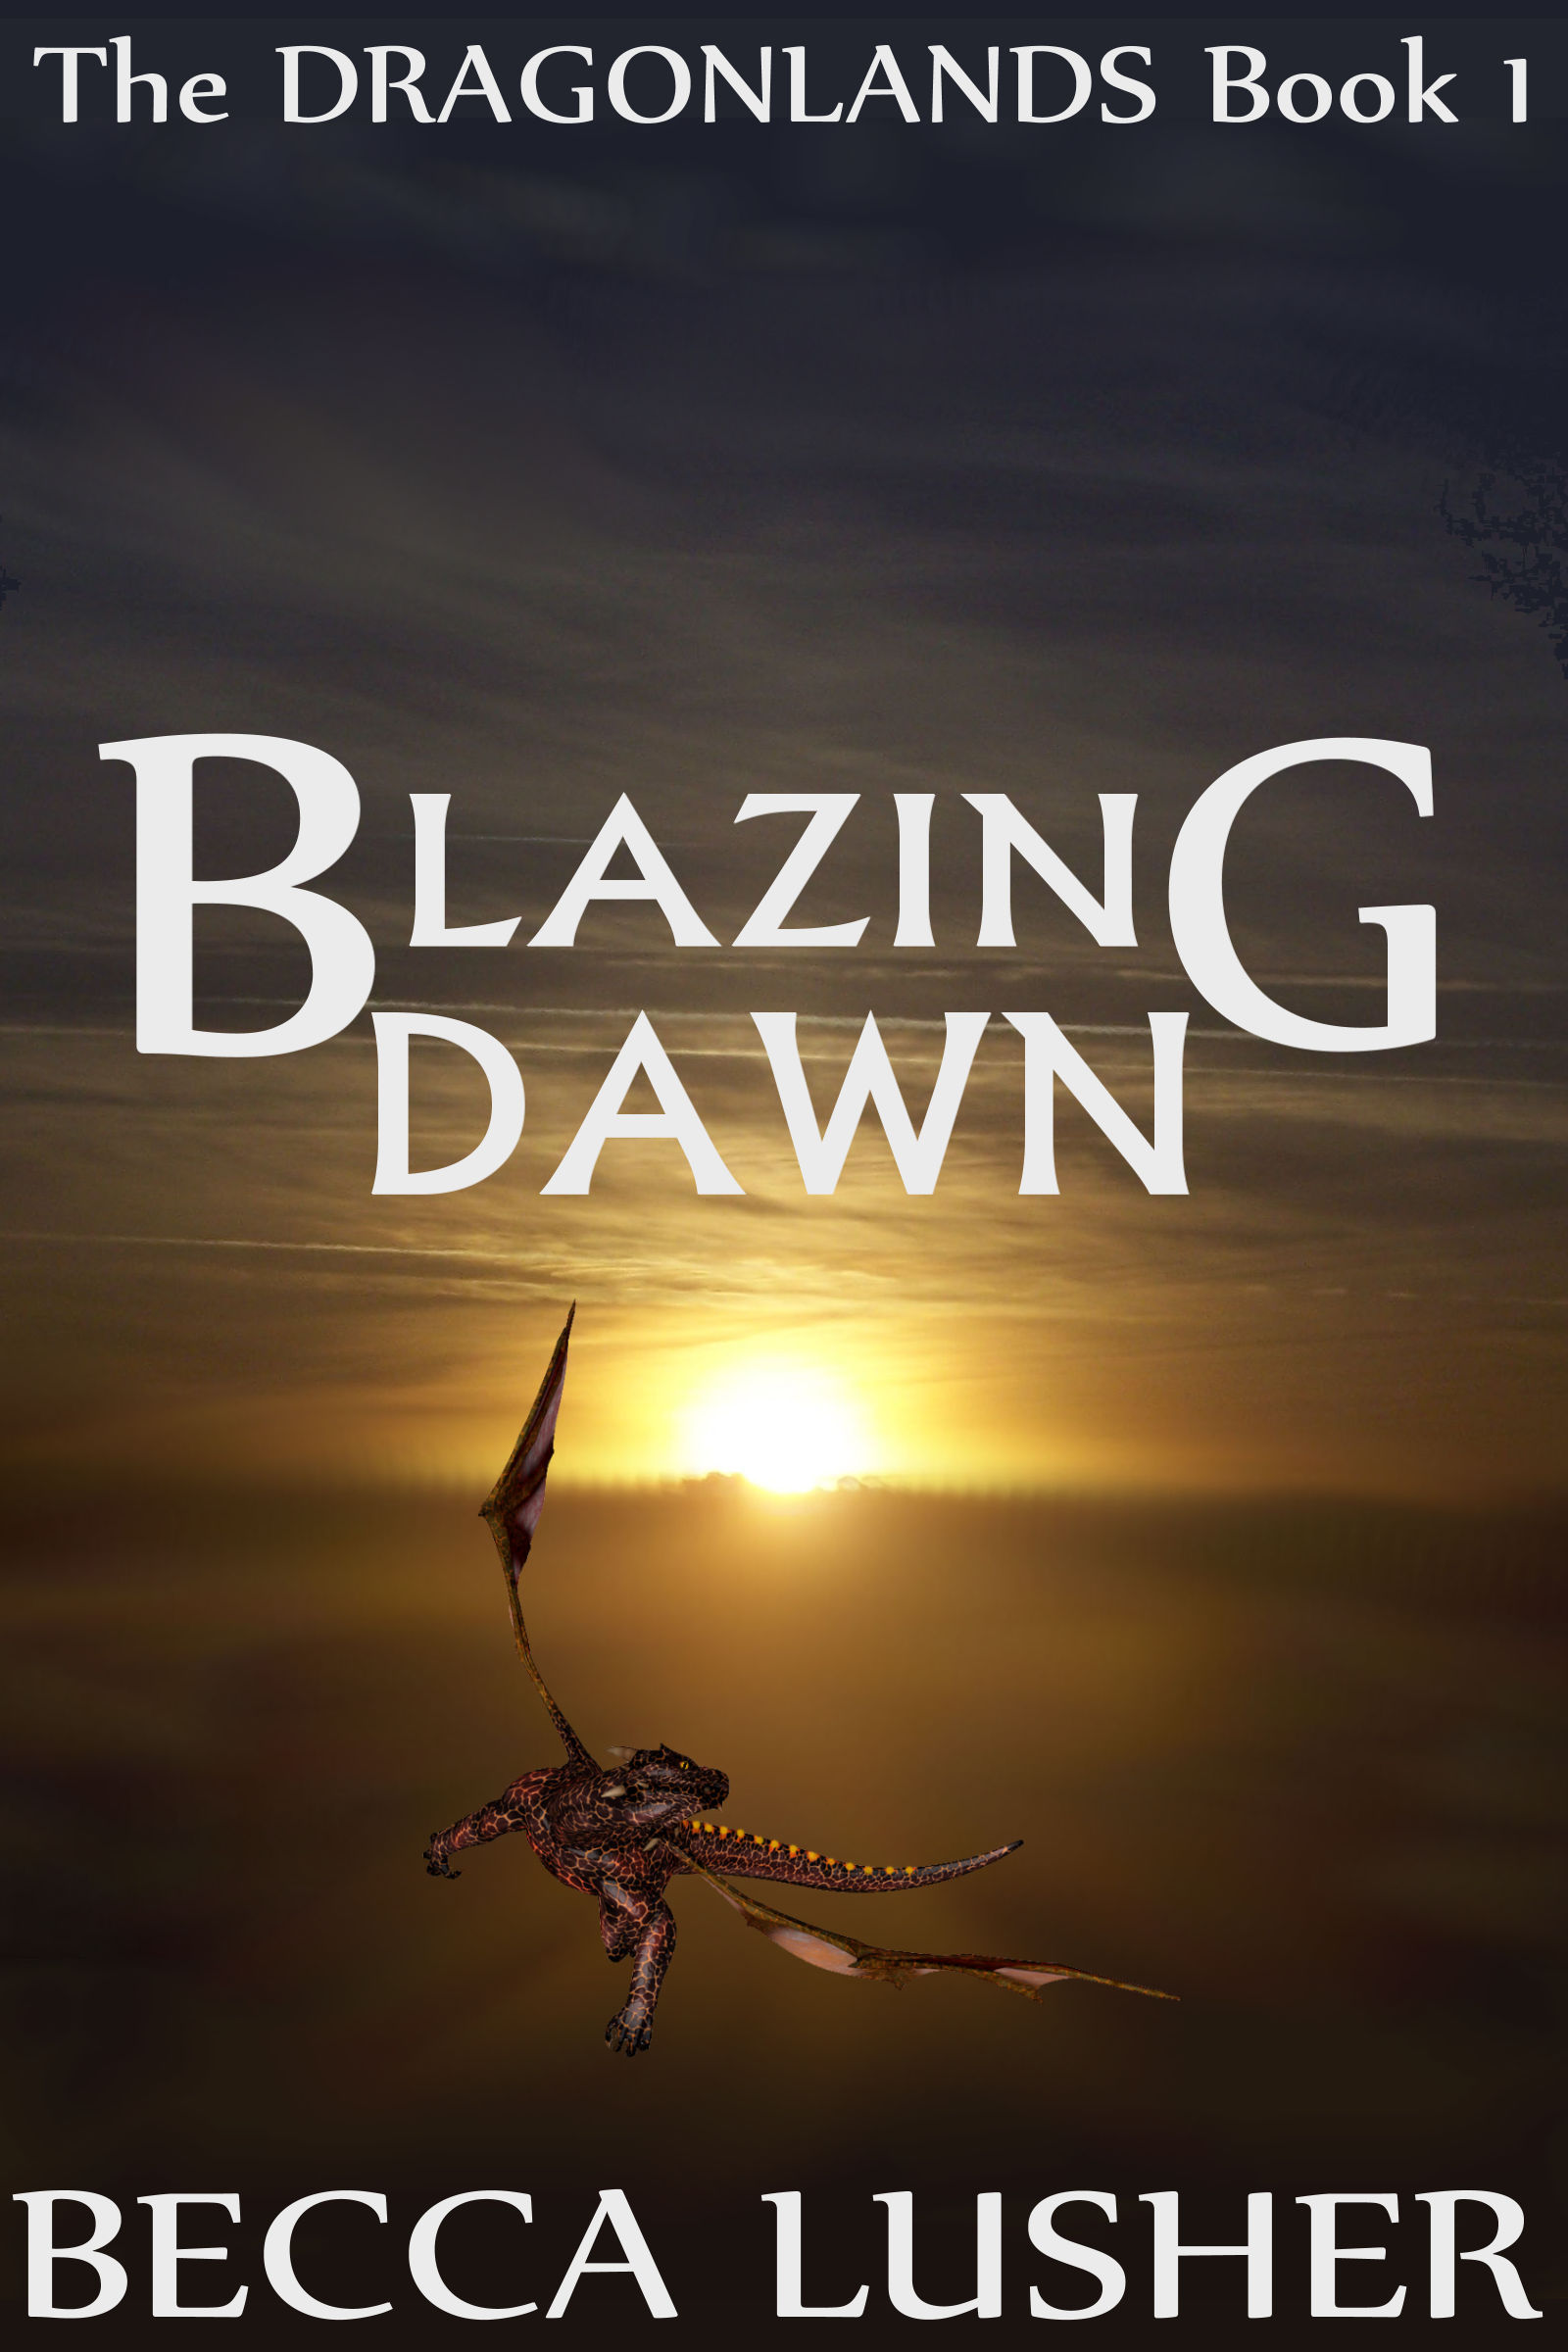 Becca Lusher: Blazing Dawn (EBook, 2016)